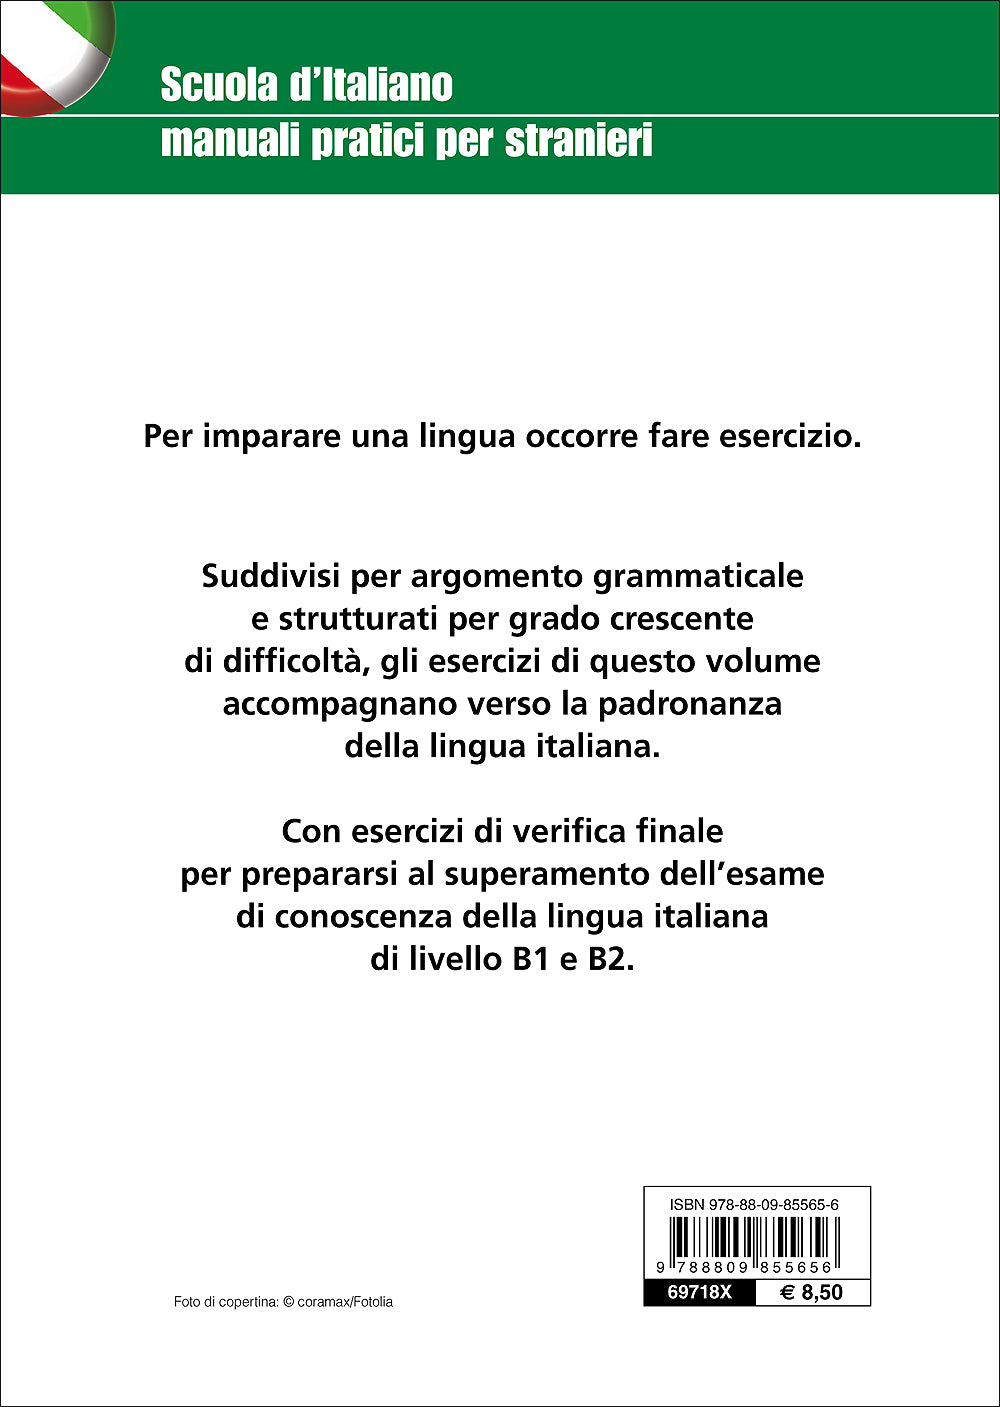 Esercizi di grammatica italiana per stranieri. La costruzione della frase - La coniugazione dei verbi - L'uso degli articoli - La punteggiatura - Le preposizioni - L'ortografia